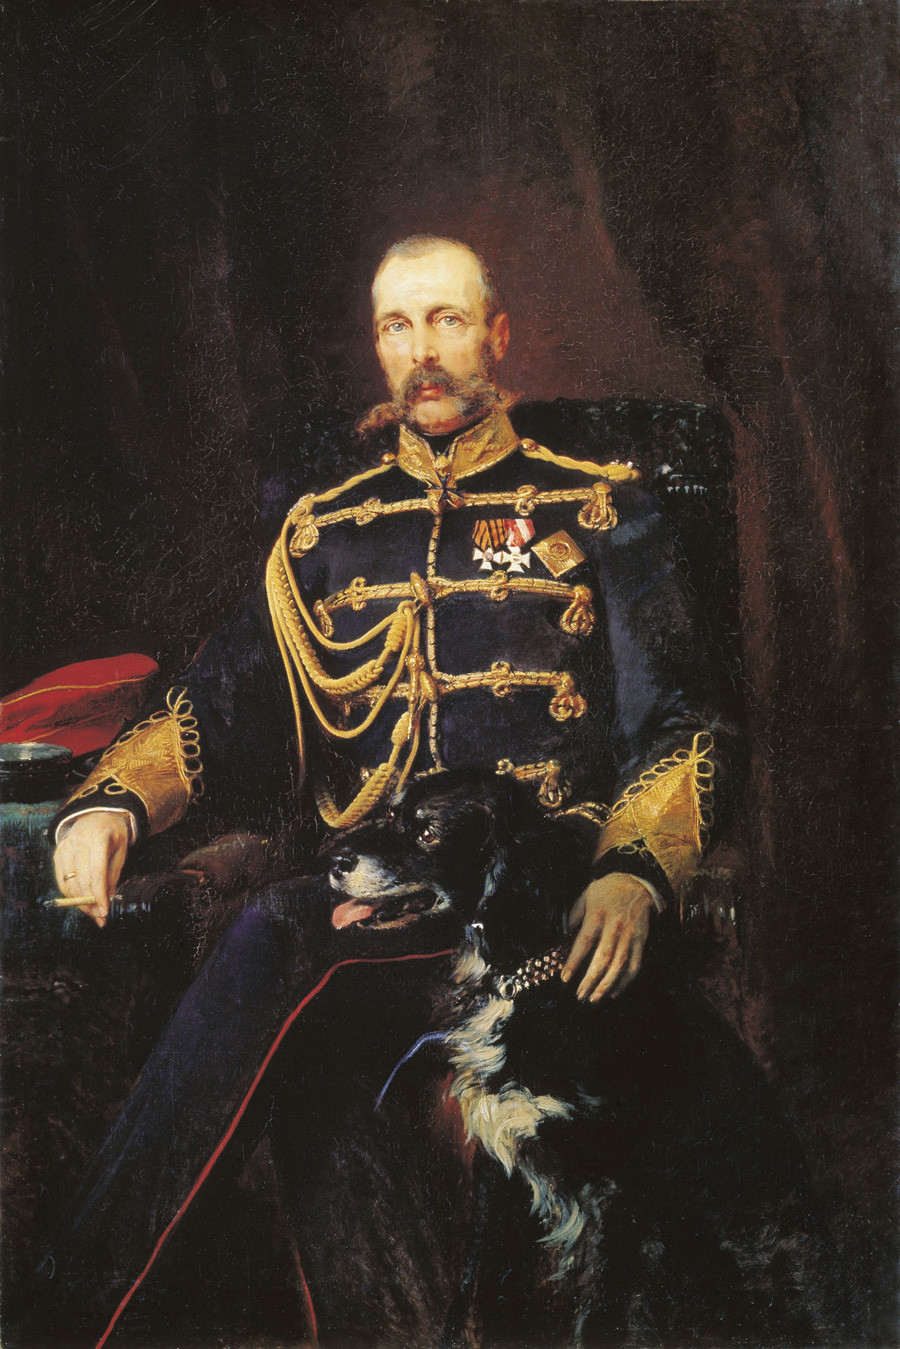 Il ritratto di Alessandro II realizzato da Konstantin Makovsky